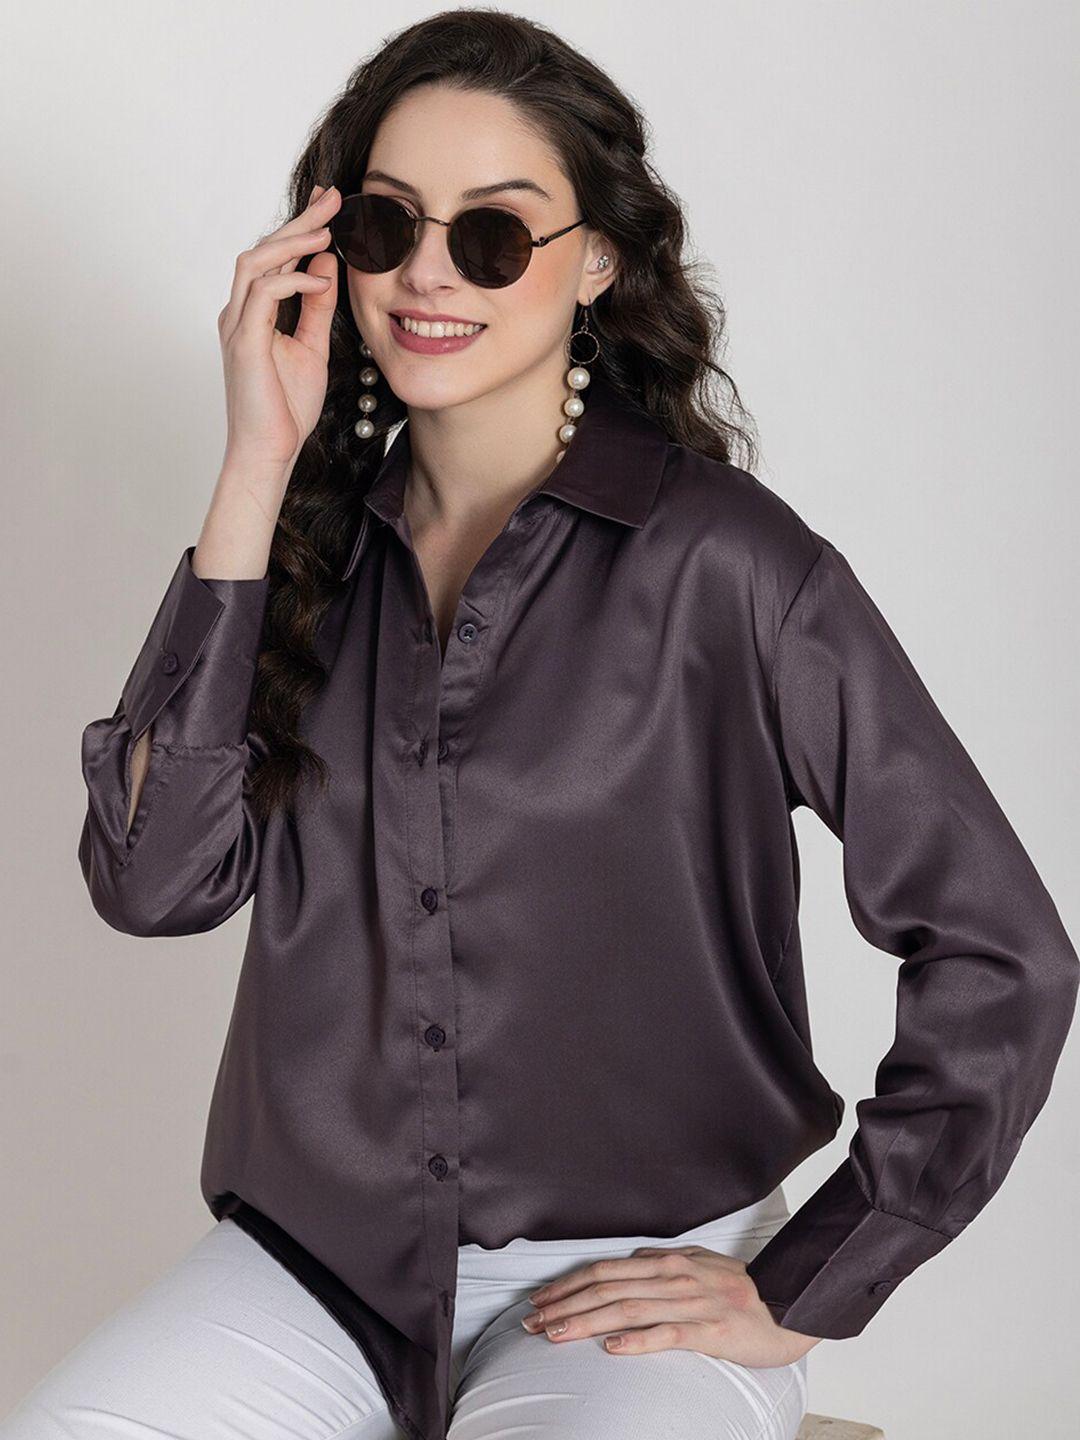 lounge dreams women comfort opaque casual shirt